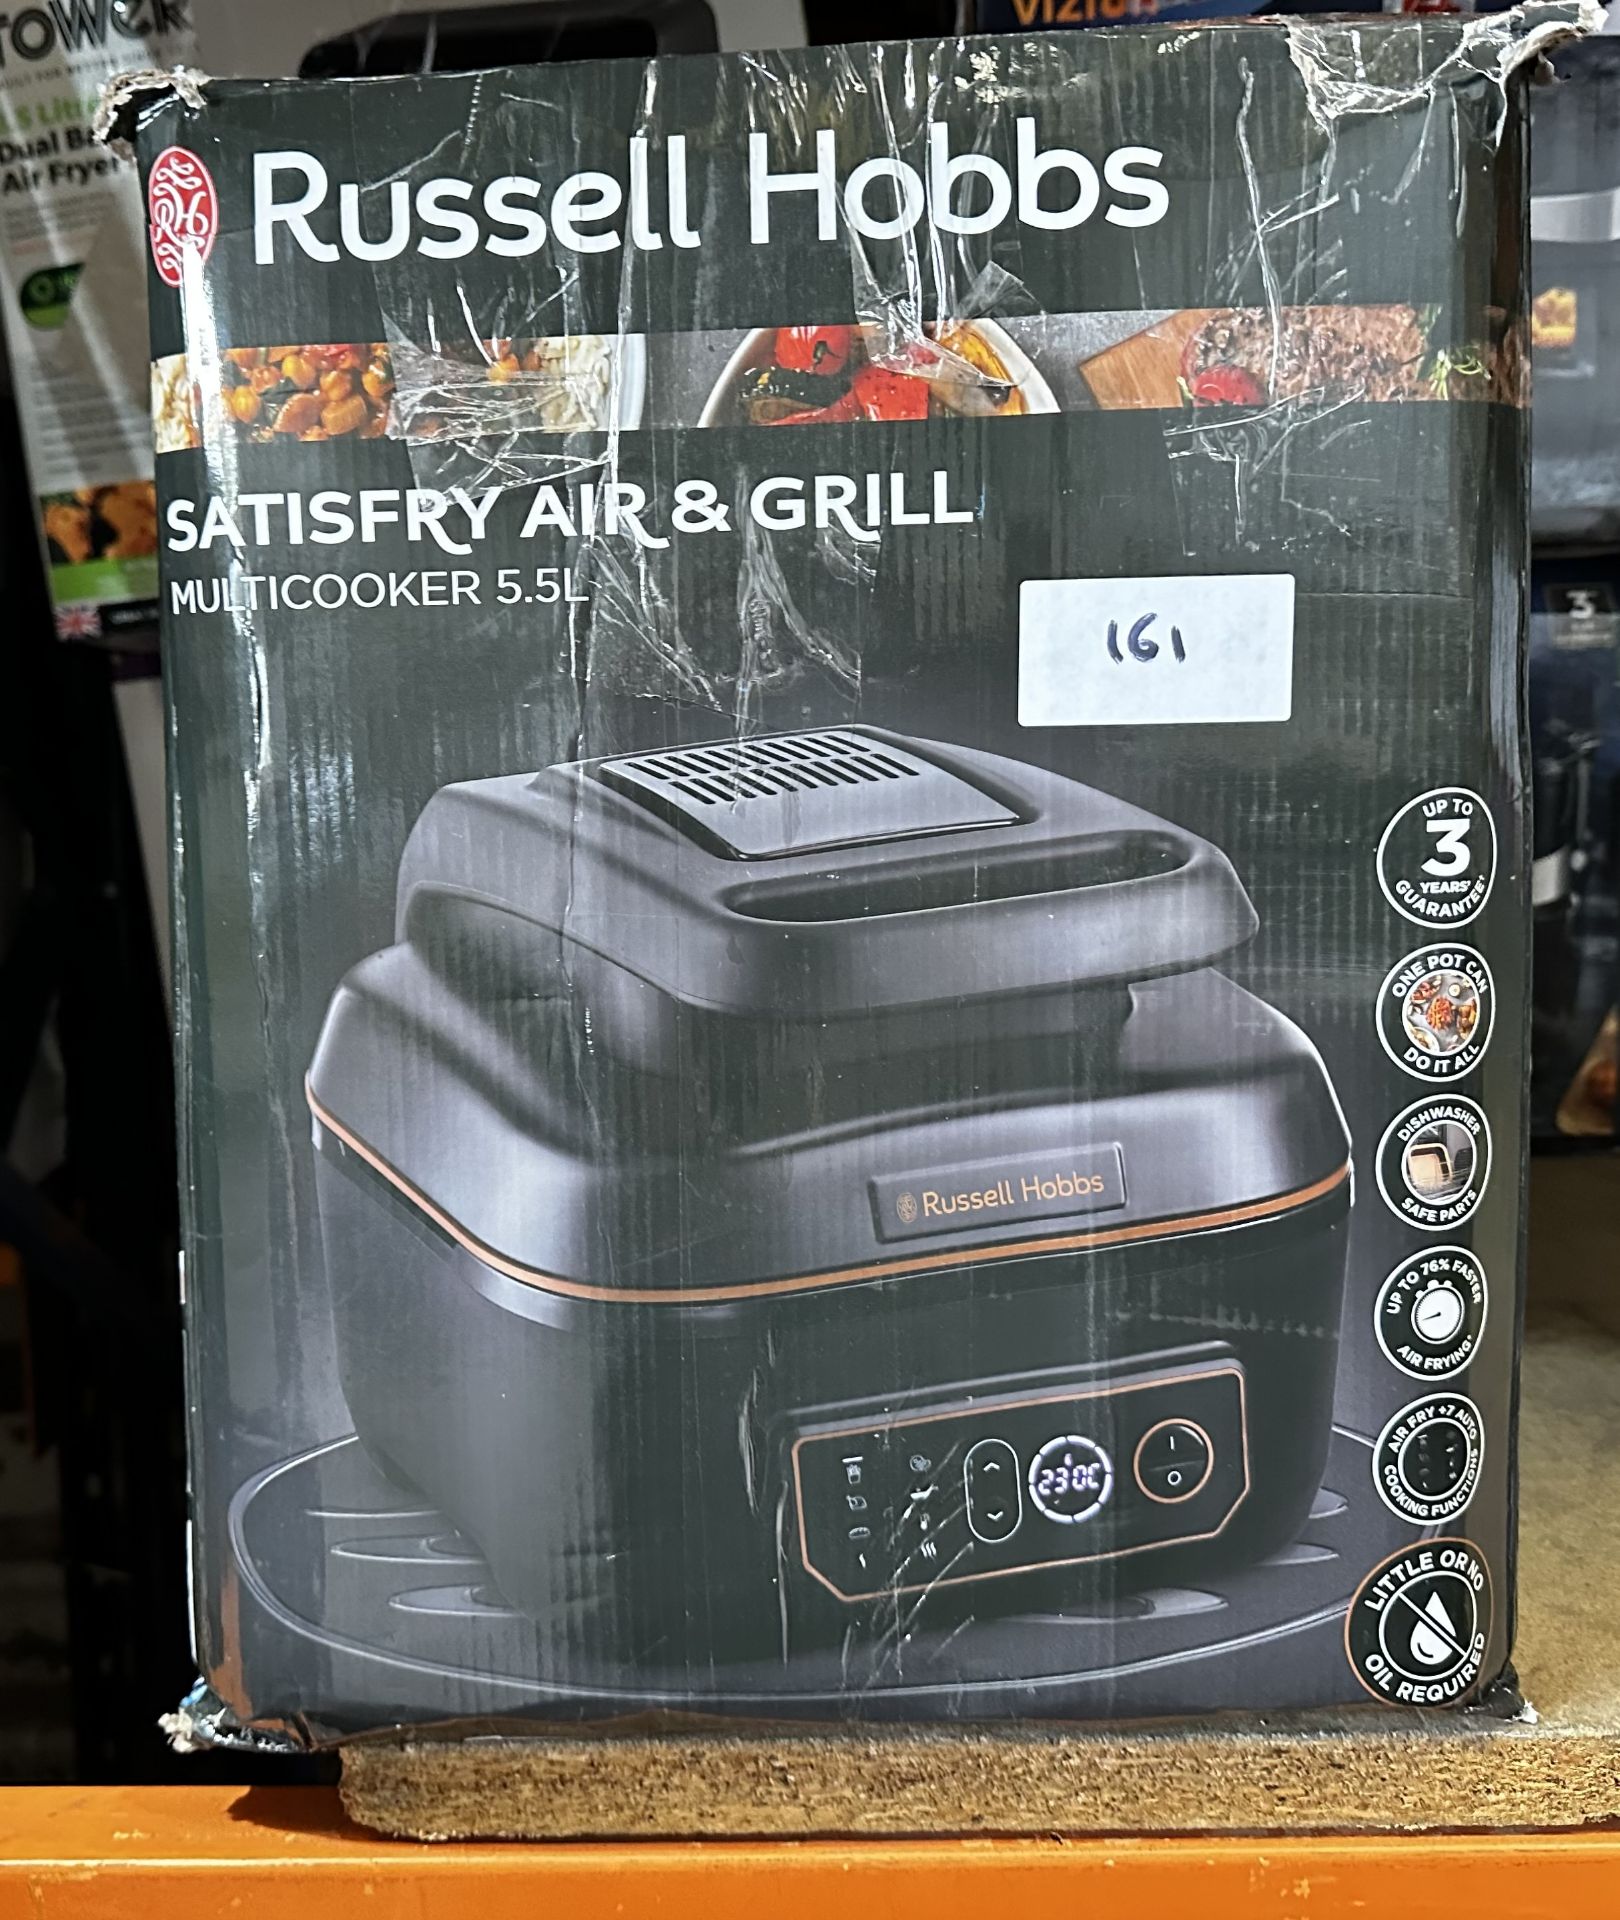 Russell Hobbs Satisfry Air & Grill MultiCooker 5.5L. RRP £120 - GRADE U